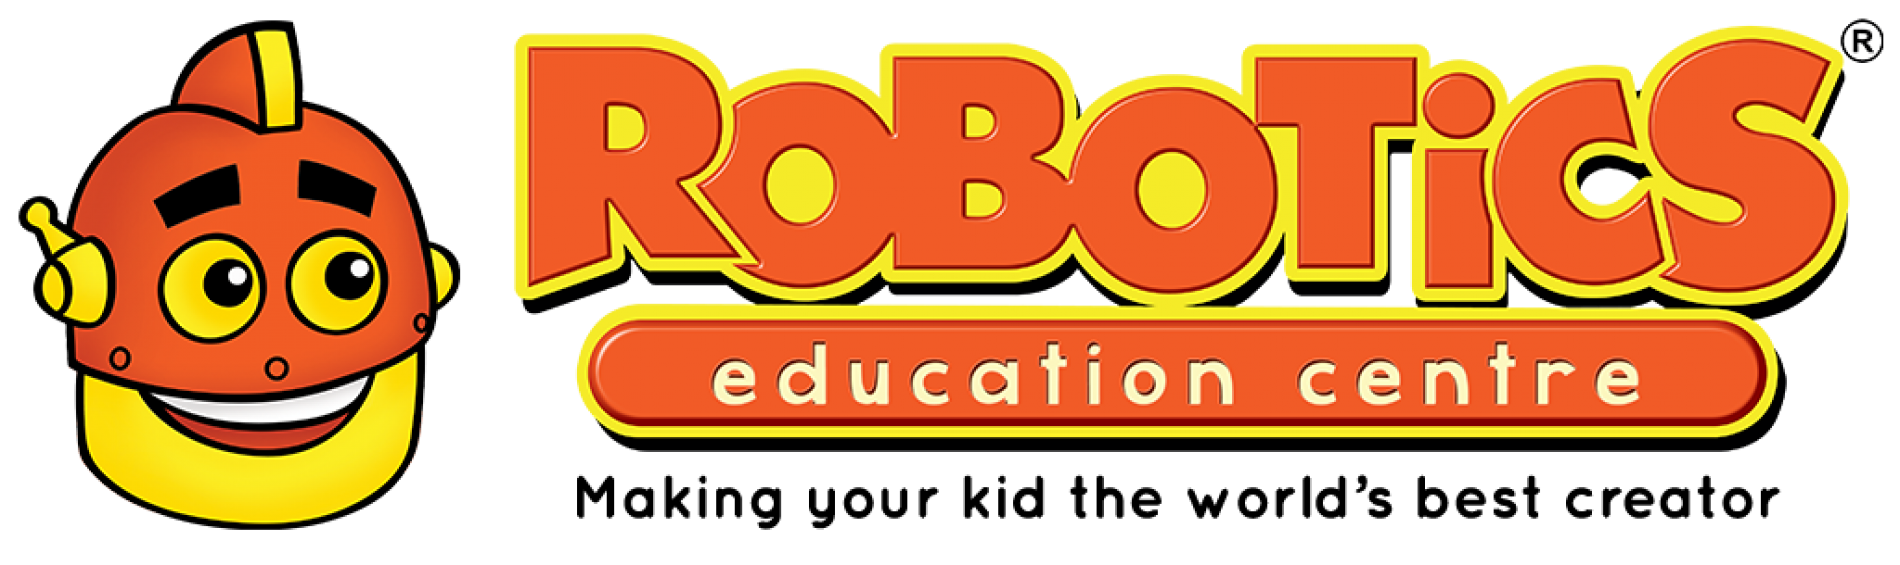 ROBOTICS Indonesia